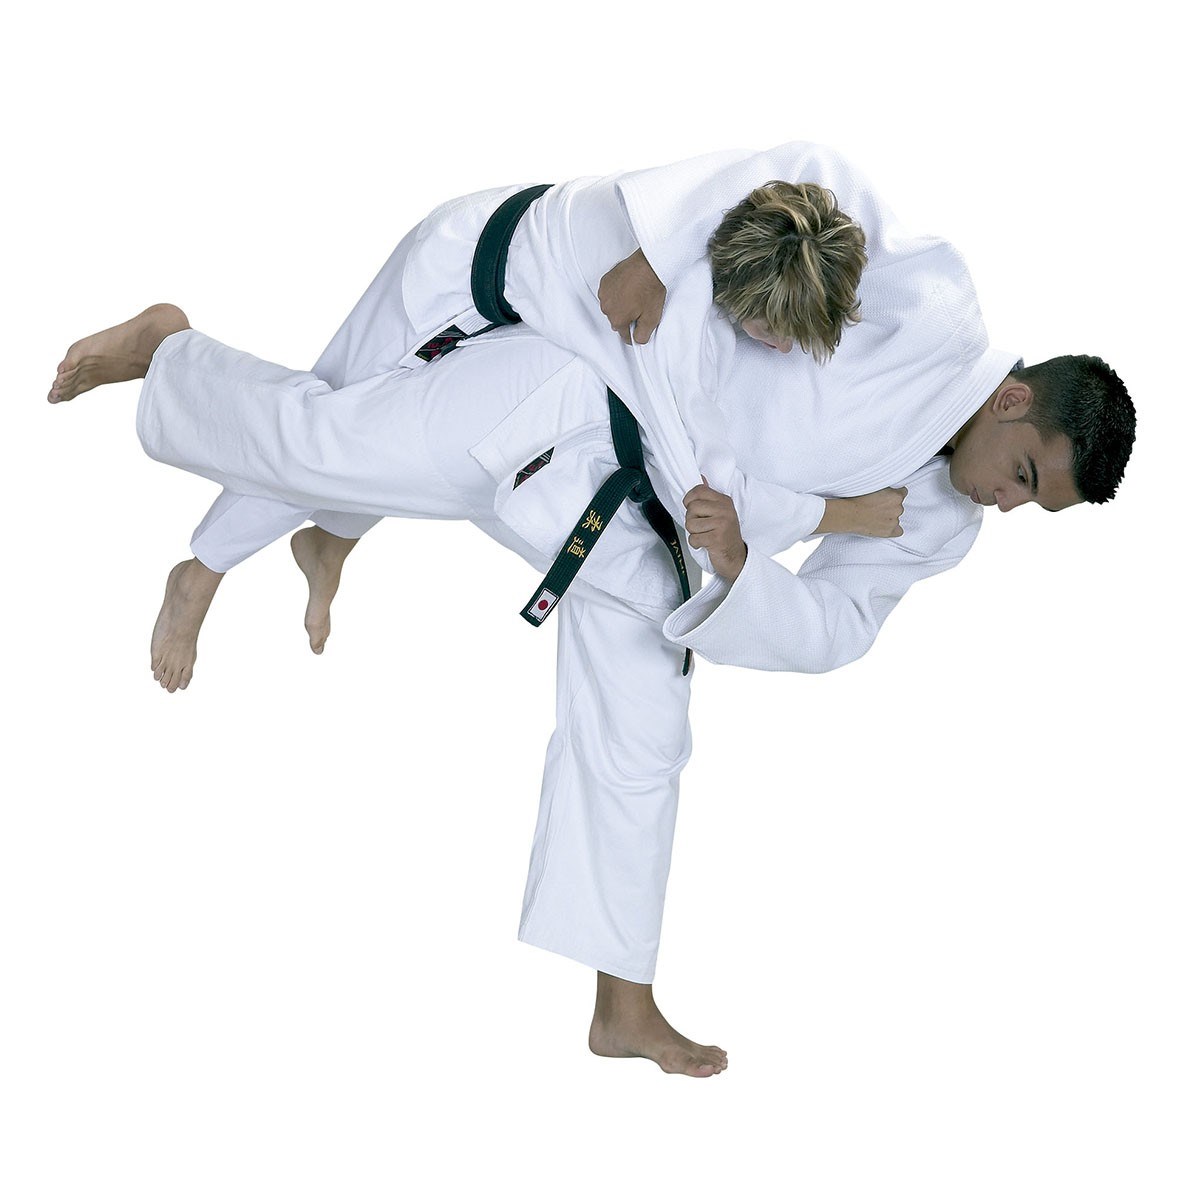 Aabenraa Judo klub slår dørene op! Skal du prøve kræfter med Judo i din vinterferie?